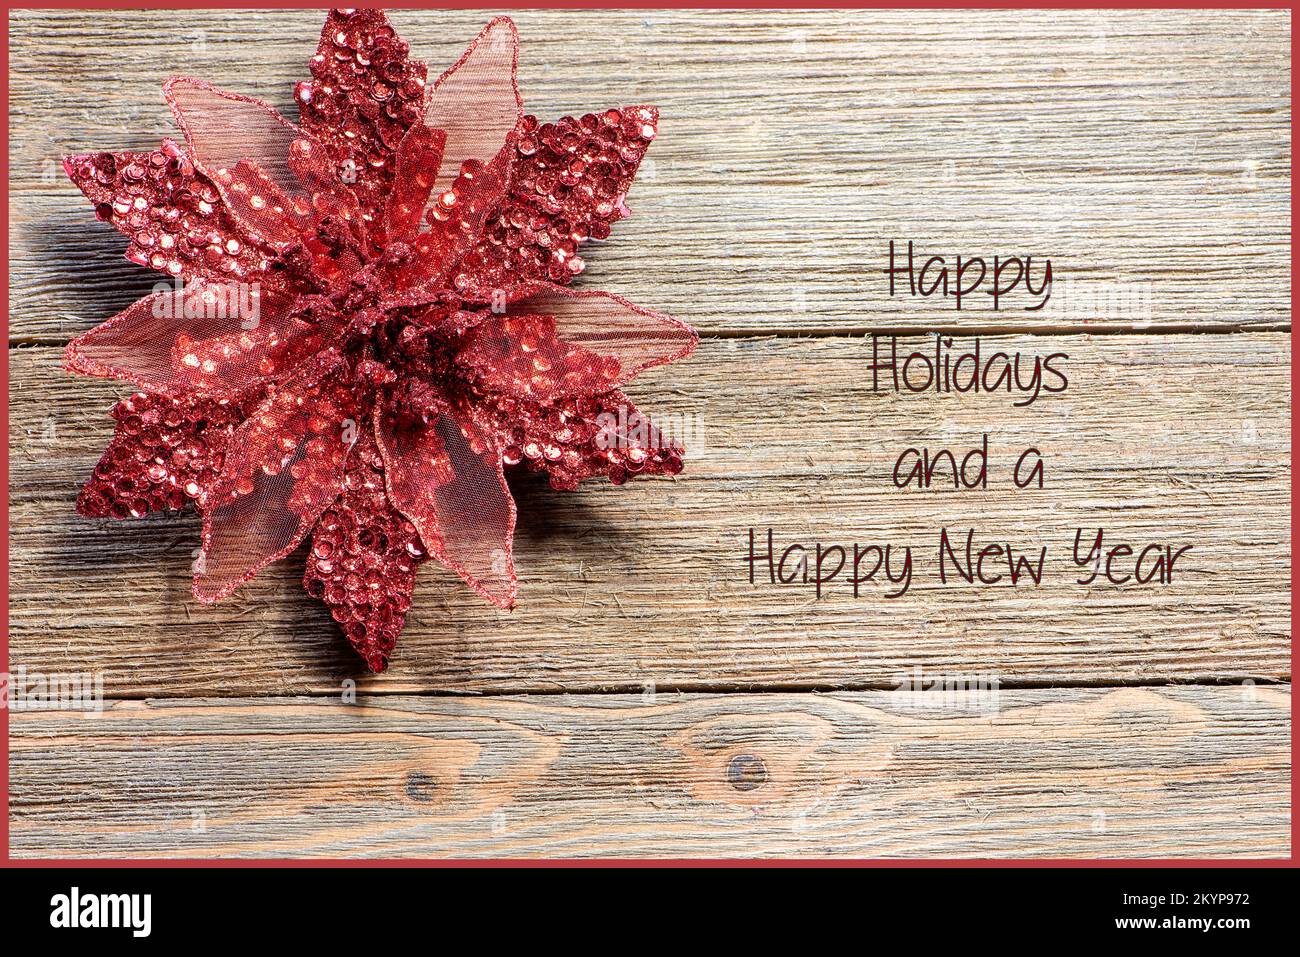 Rosso Natale ornamento Poinsettia su uno sfondo in legno, stile casale, Happy Holidays text Foto Stock